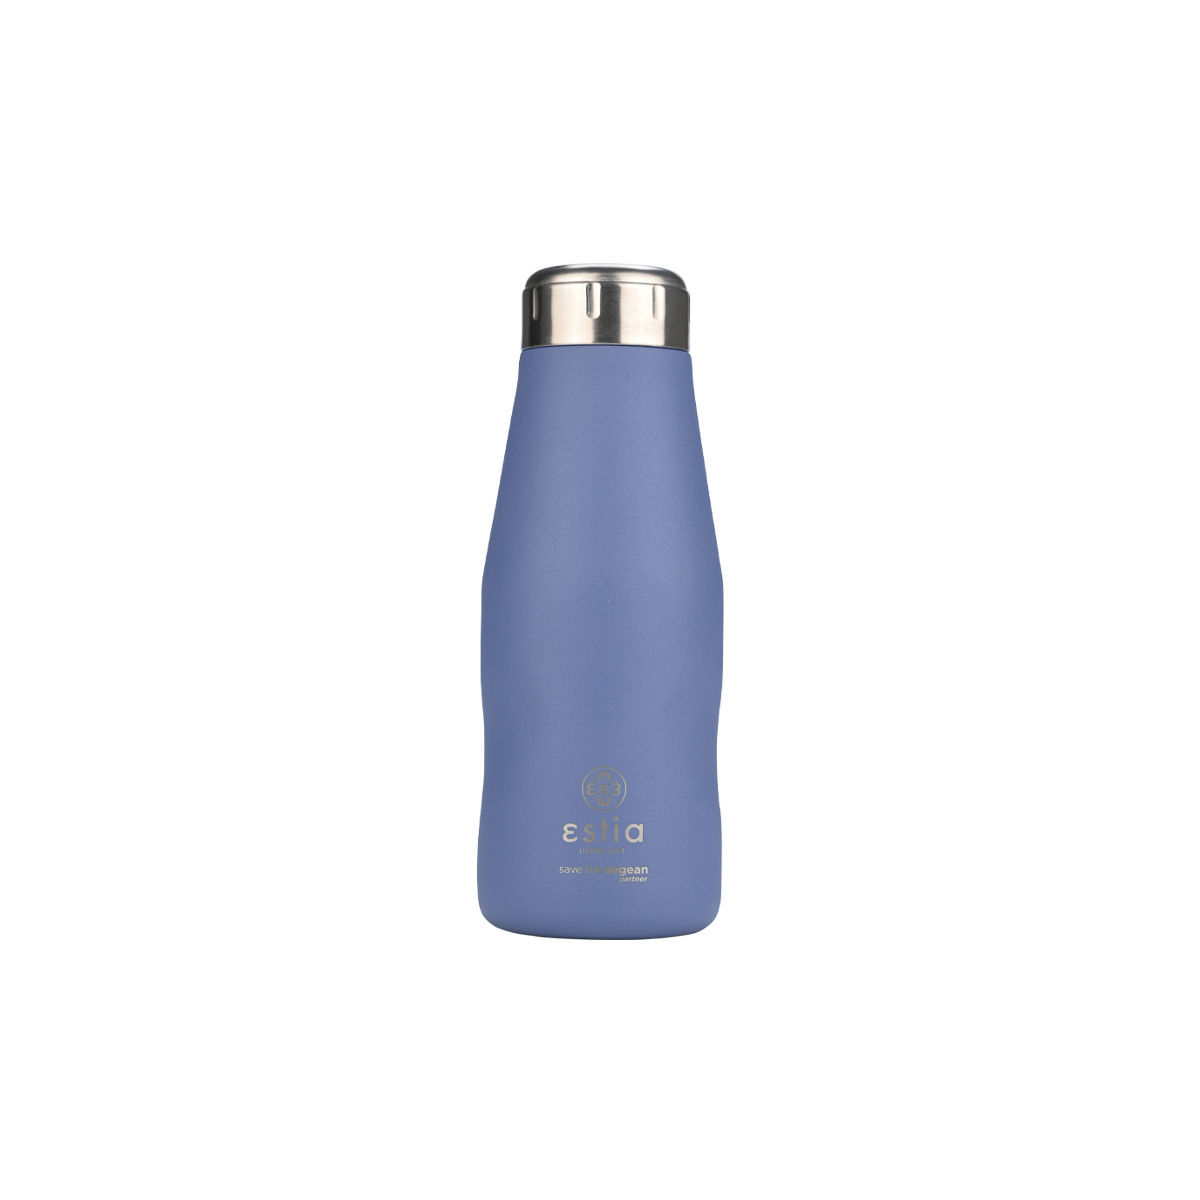 Θερμός-Μπουκάλι Ανοξείδωτο Denim Blue Flask Save The Aegean Estia 350ml-6,5×6,5×18,5εκ. 01-22341 (Υλικό: Ανοξείδωτο, Χρώμα: Μπλε) – estia – 01-22341